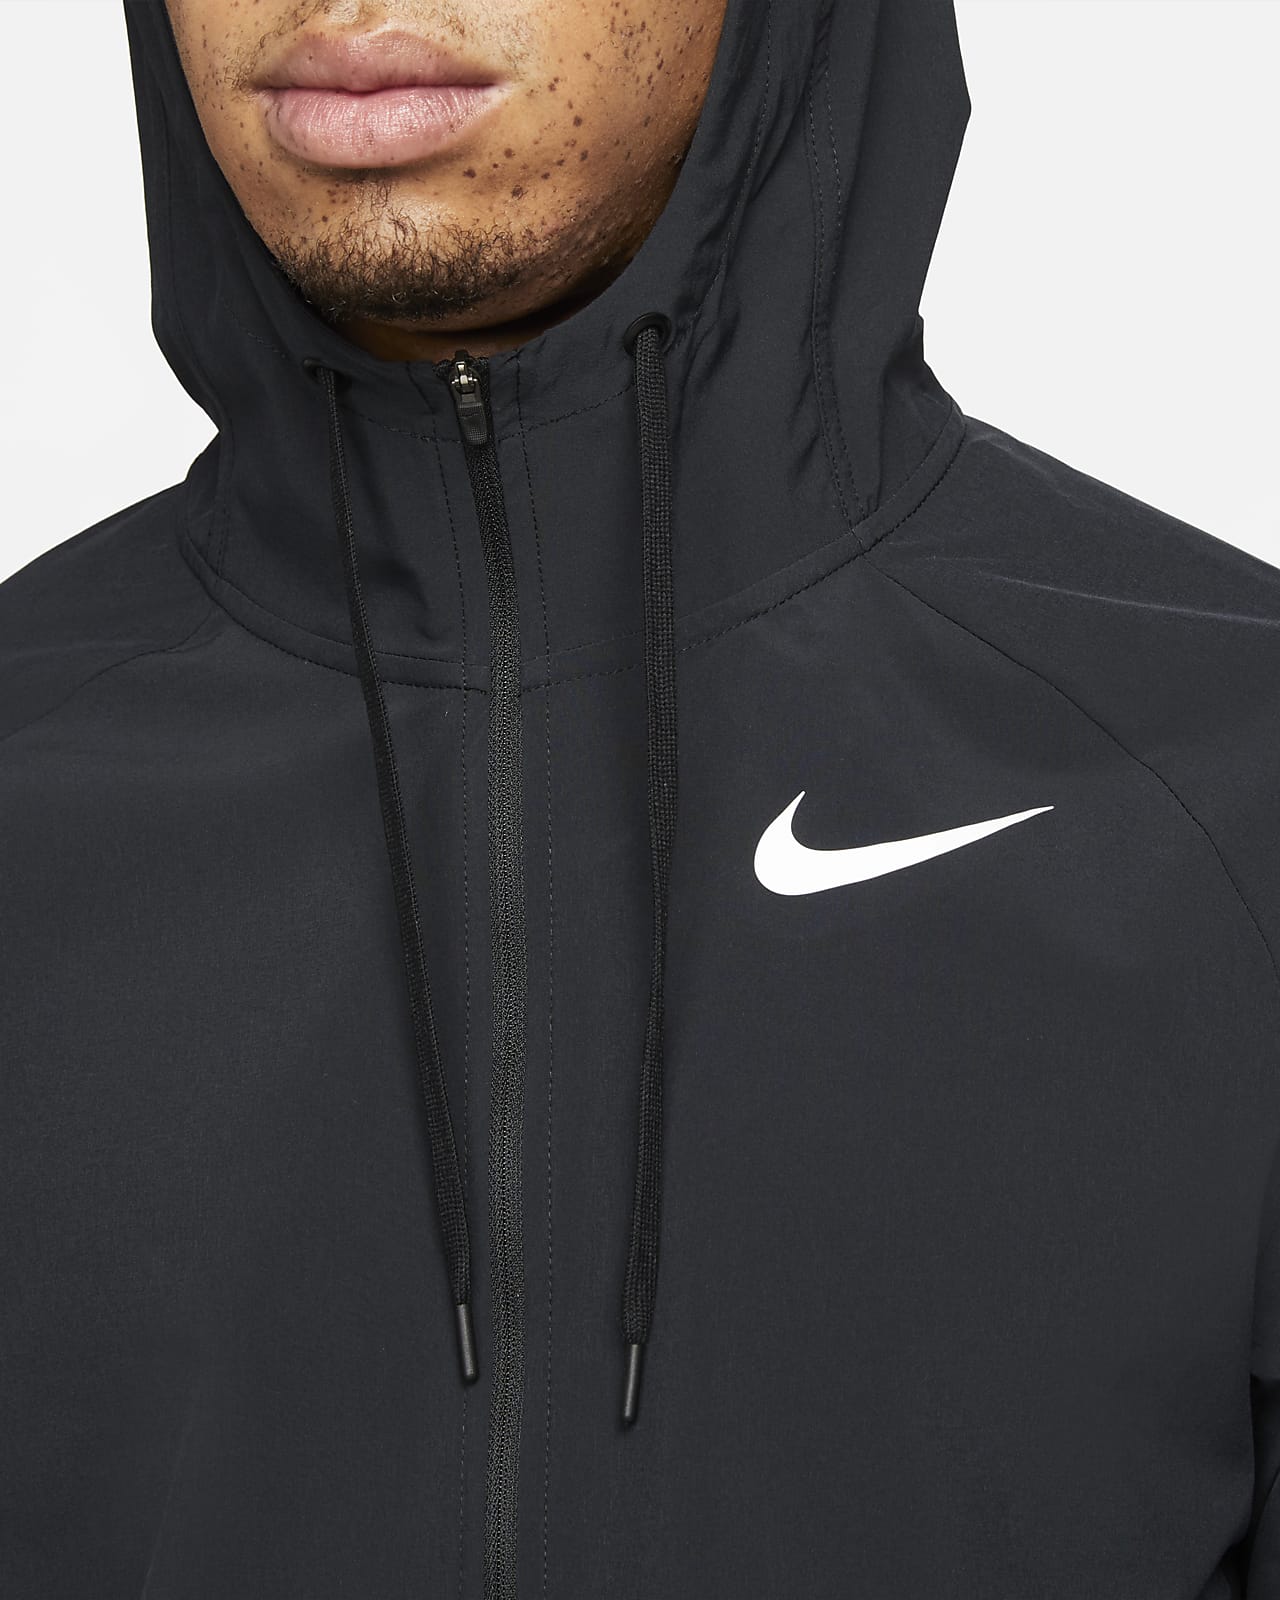 Nike Jacket Men's Navy Used